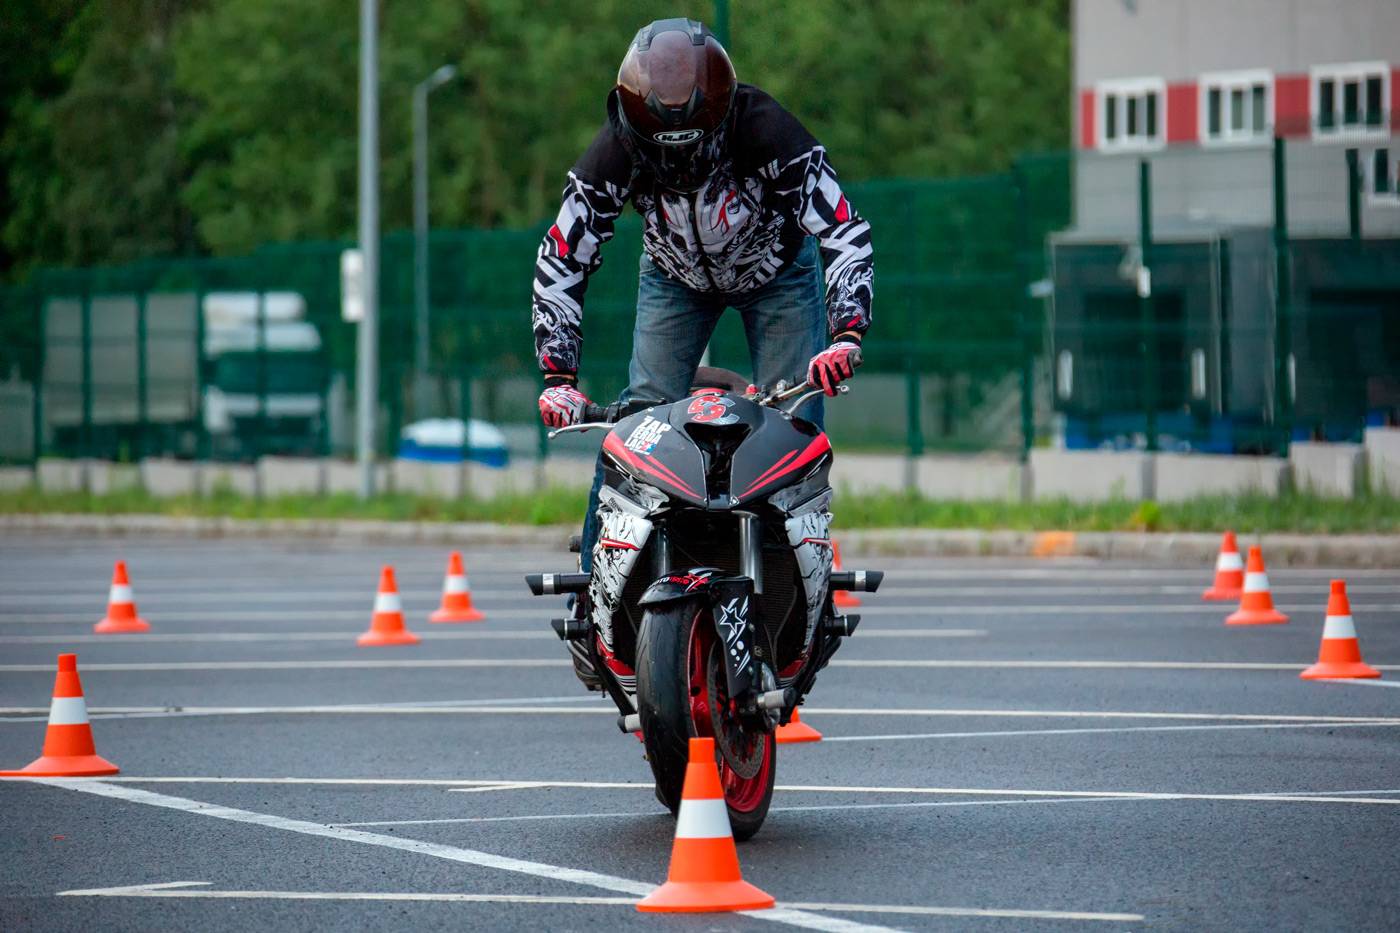 Цель обучения вождению мотоцикла: сдать экзамен в гибдд или научиться безопасно управлять мотоциклом в будущем